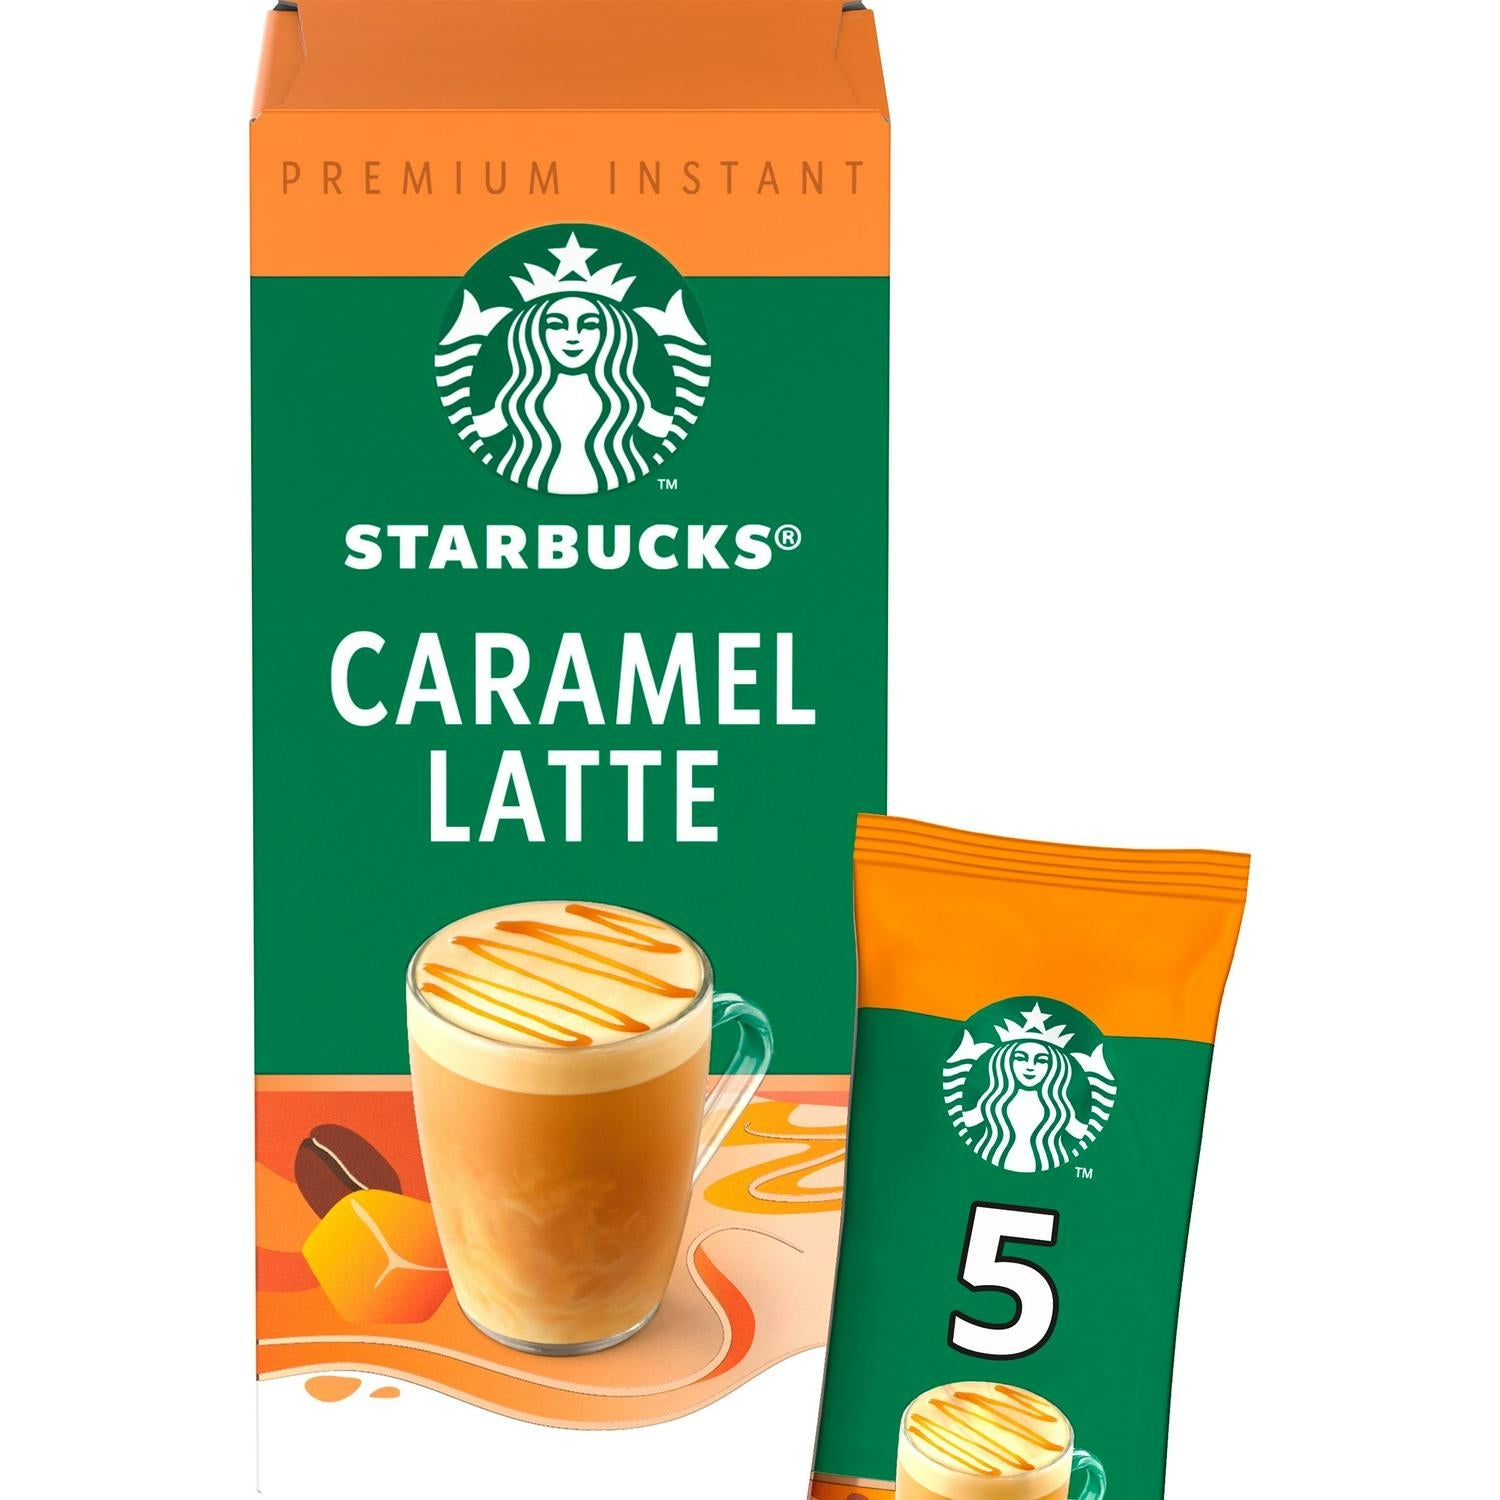 Starbucks Caramel Latte Premium Instant Coffee, 21.5g